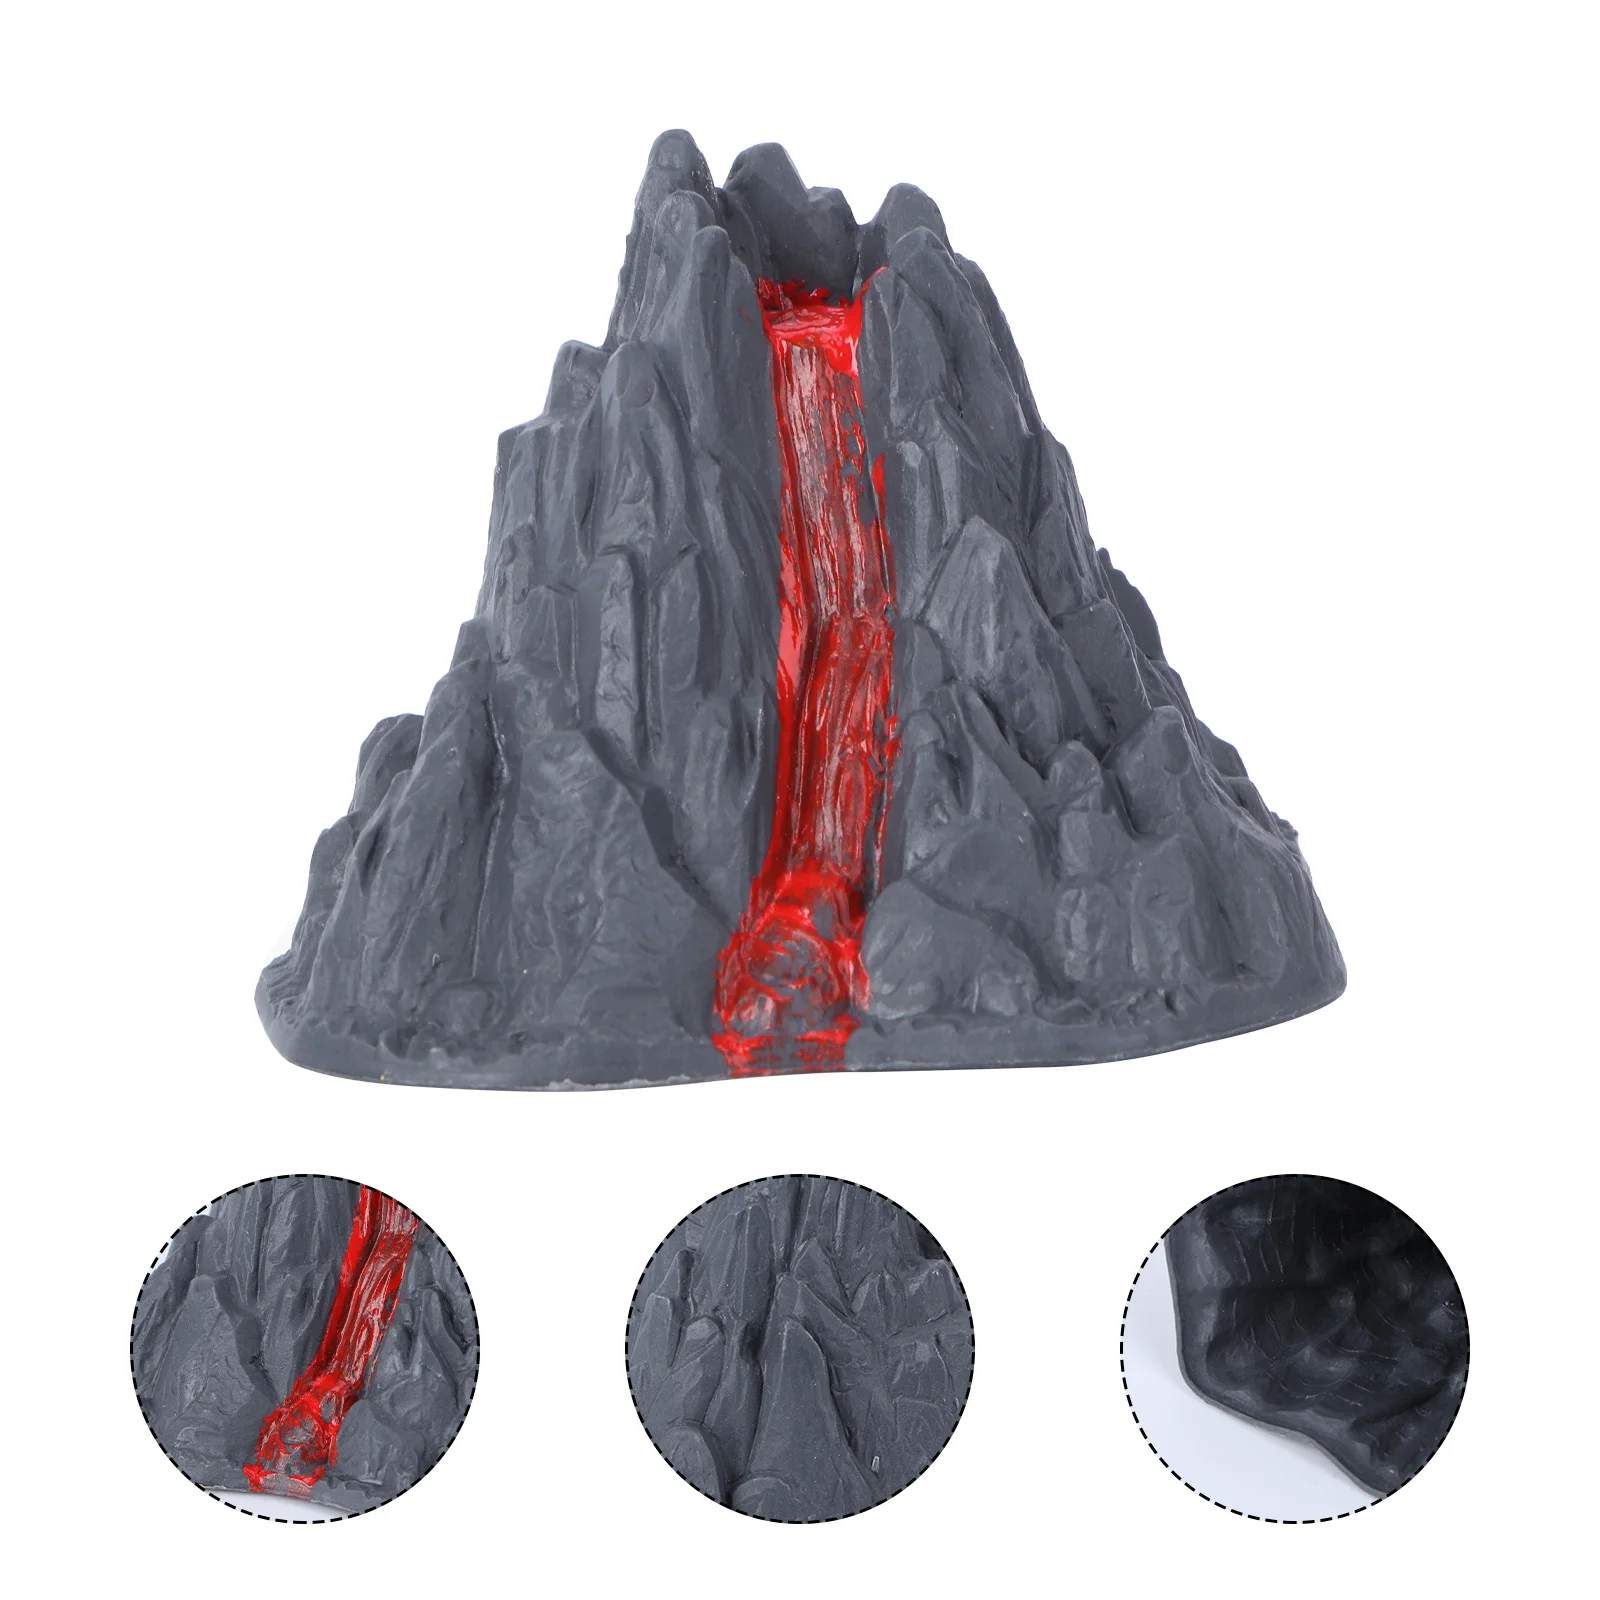 

Volcano Model Toy Simulation Decor Landscape Adornment Decorative Home Accessories